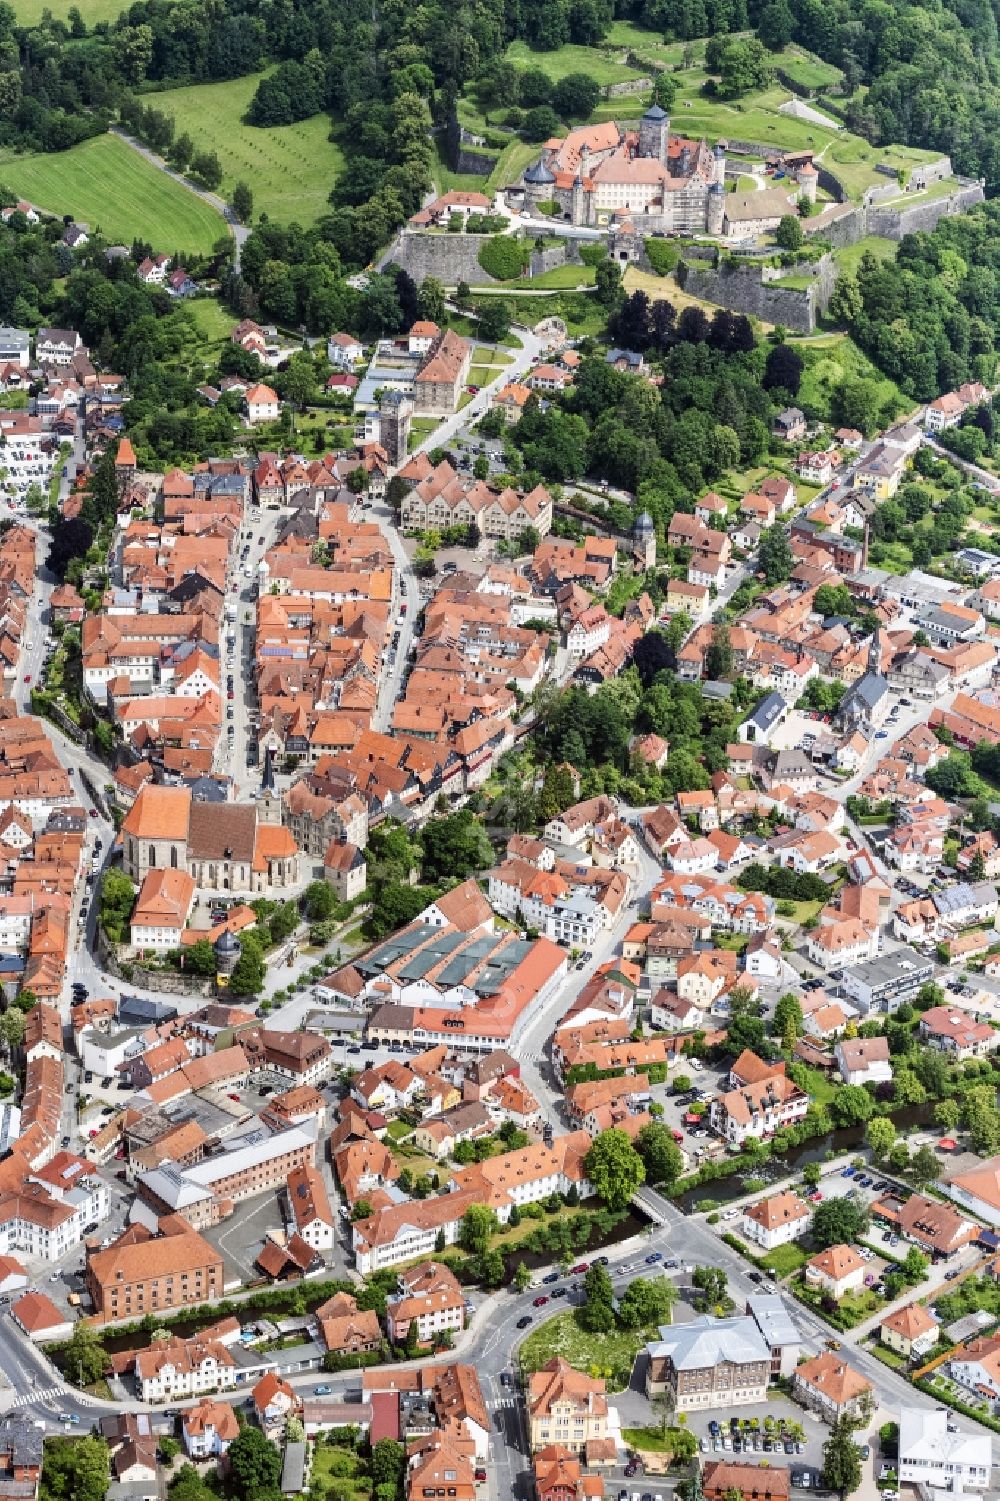 Luftbild Kronach - Altstadtbereich und Innenstadtzentrum in Kronach im Bundesland Bayern, Deutschland